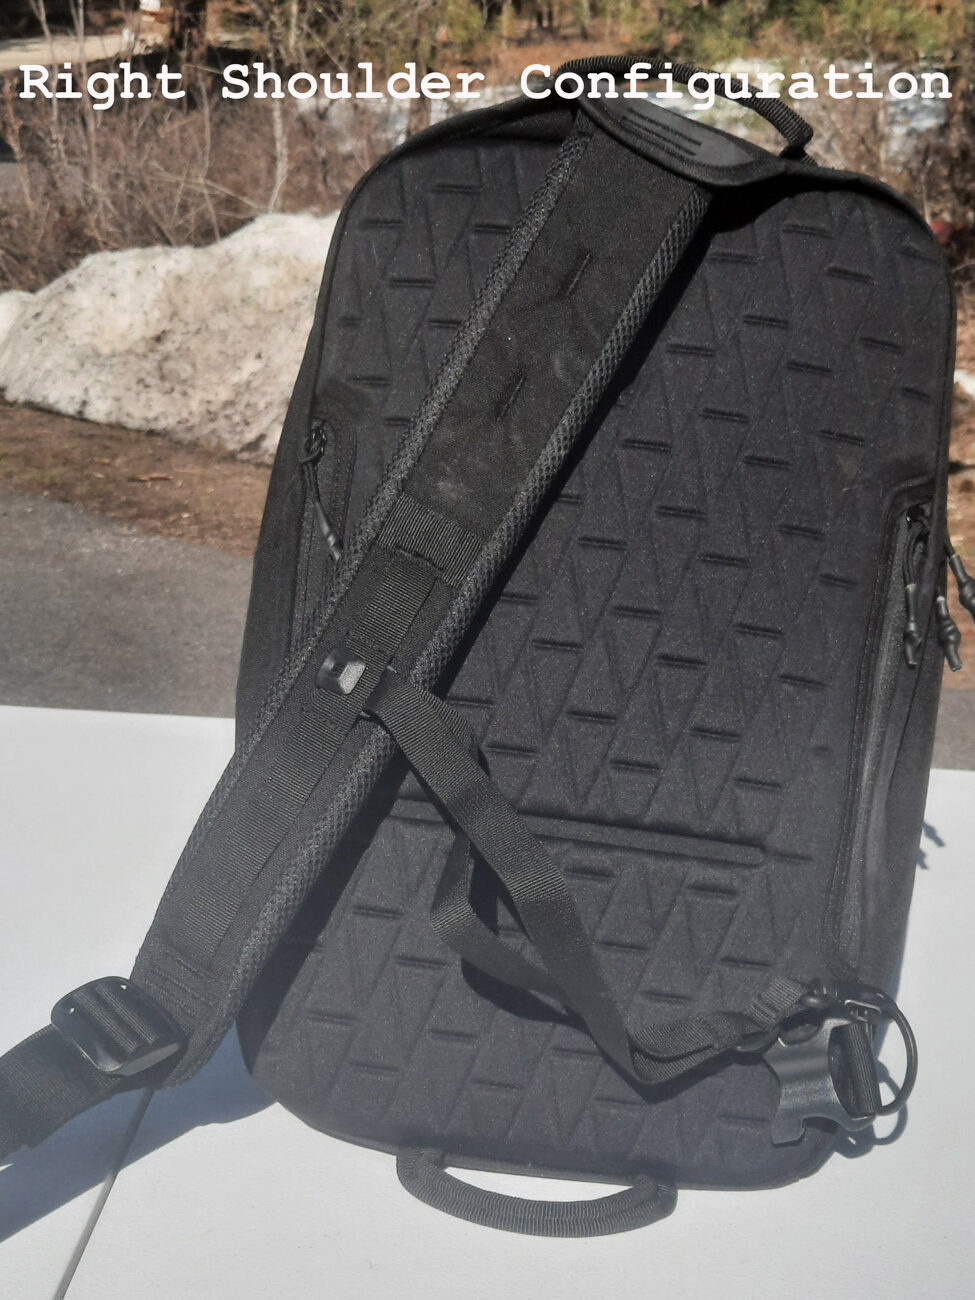 Right Shoulder sling configuration elite survival bag